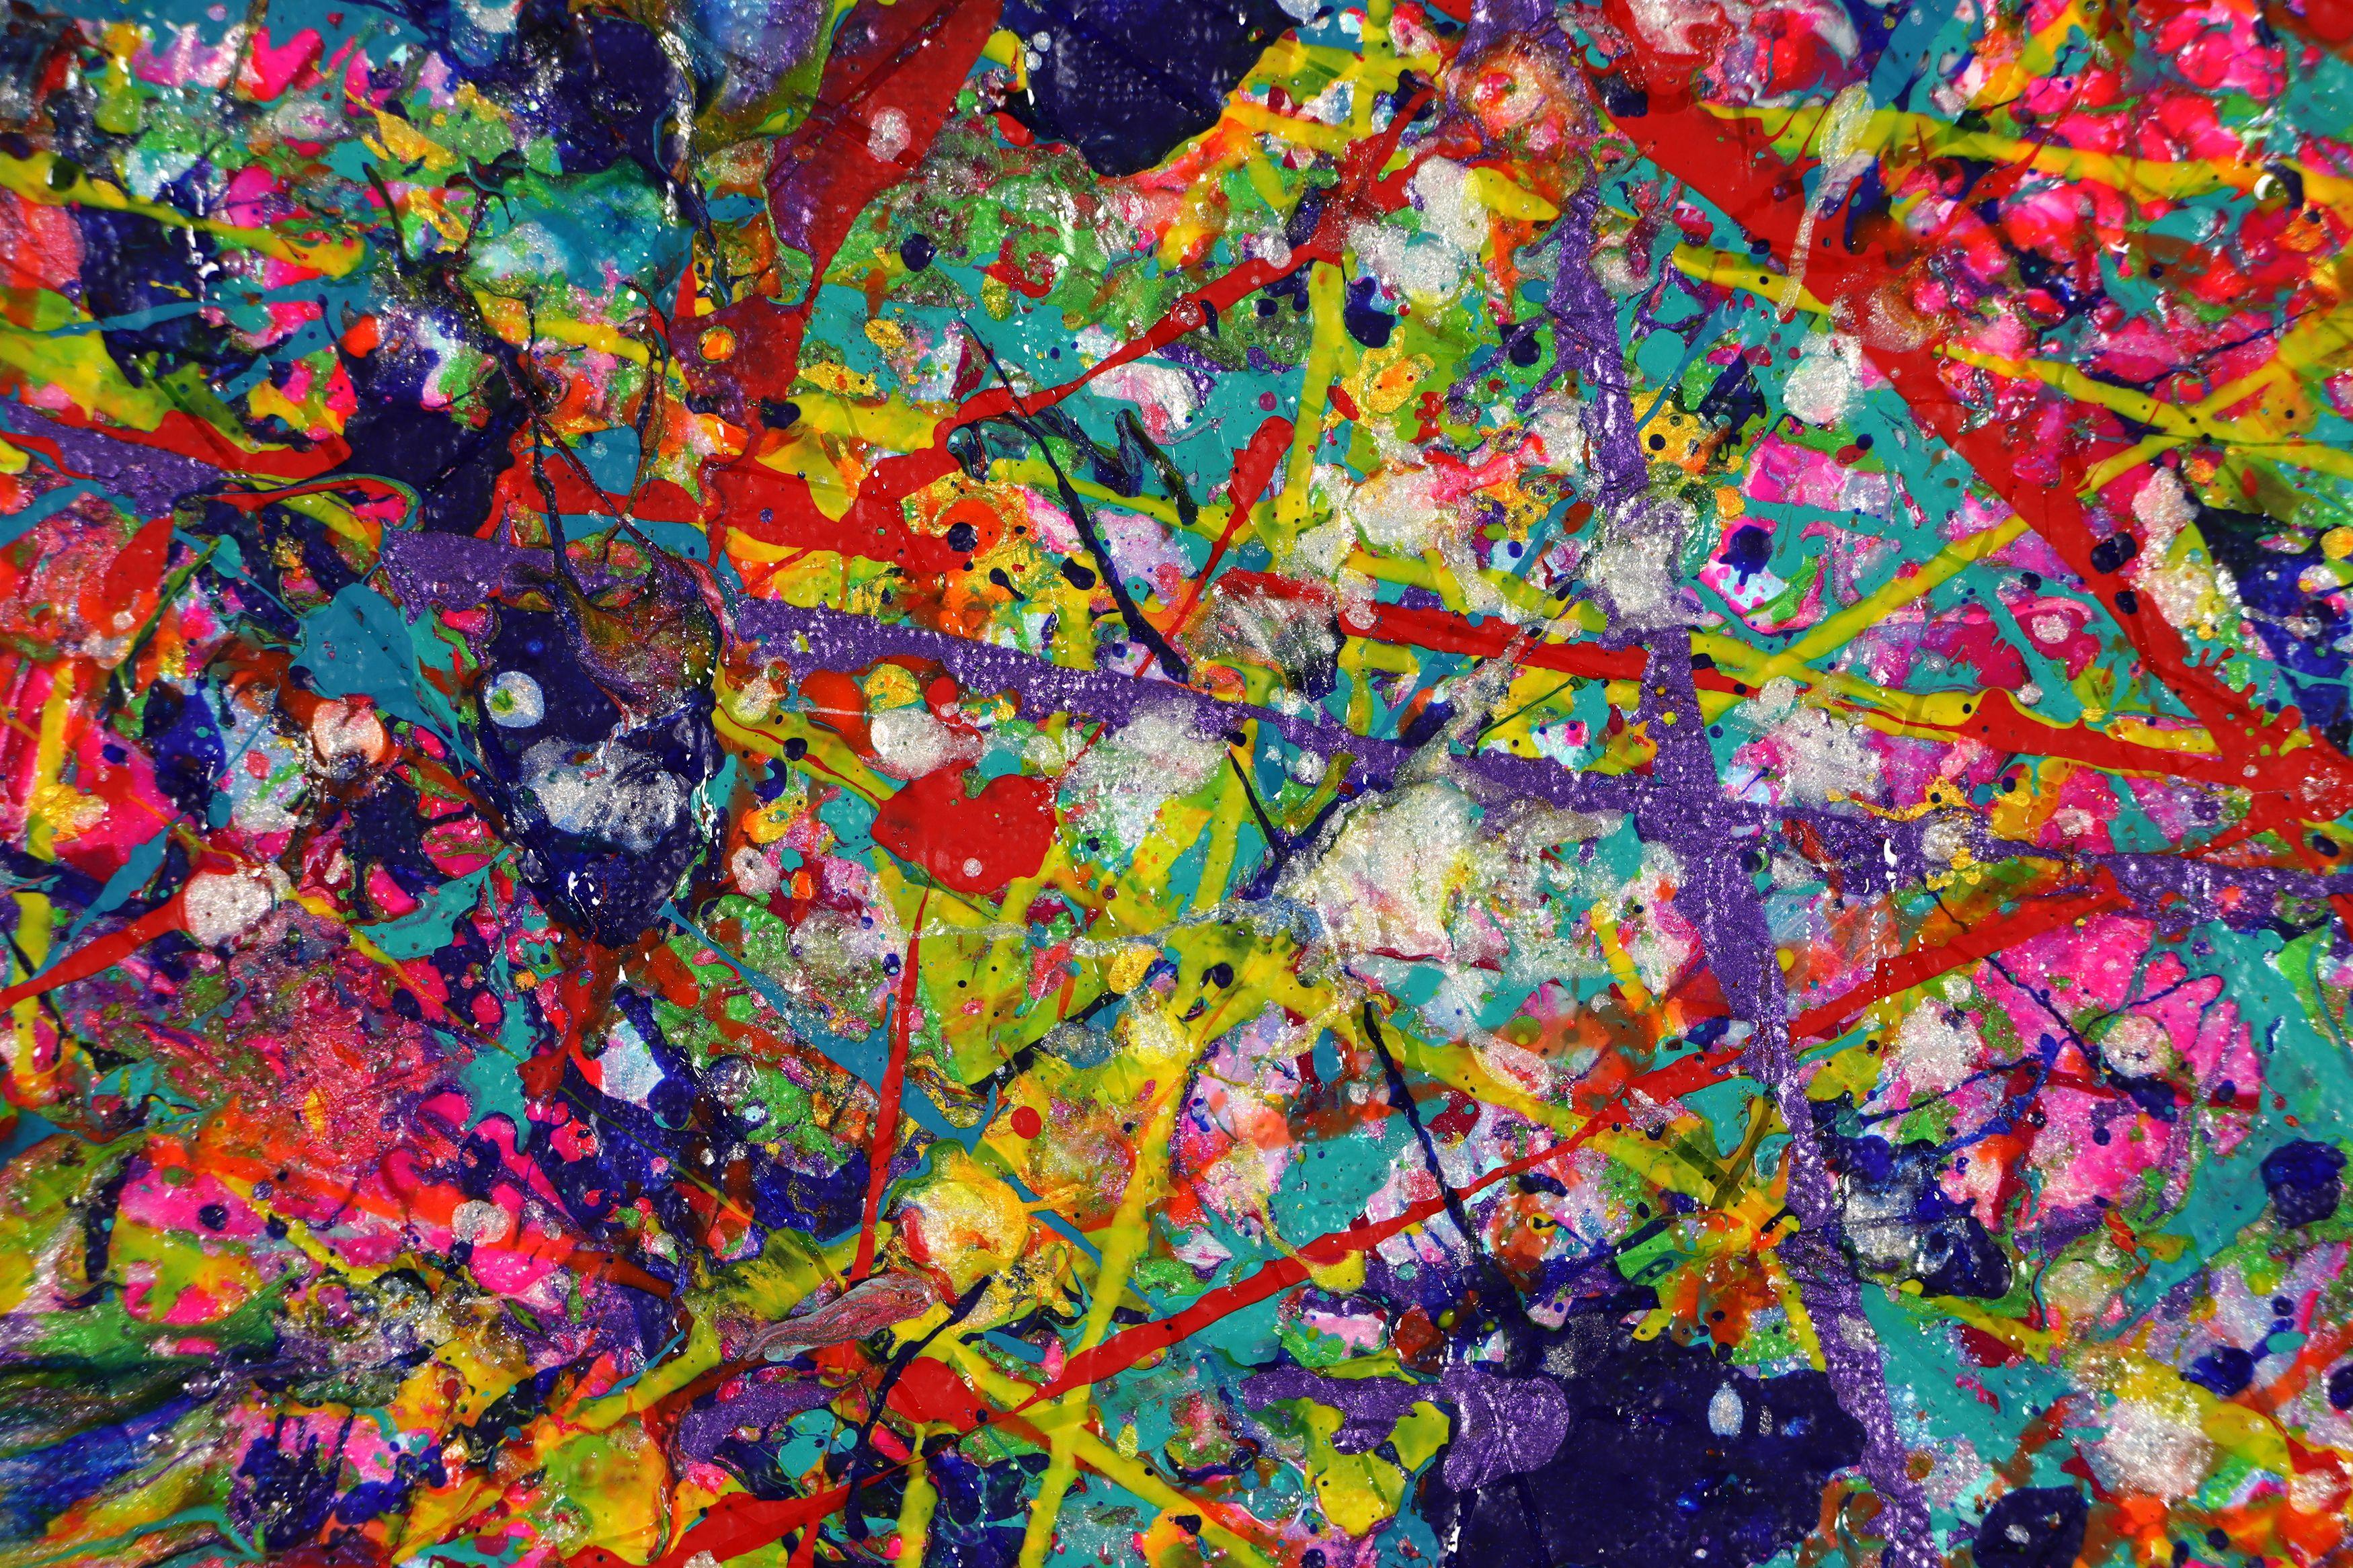 Leidenschaftliche abstrakt-expressionistische Aktionsmalerei in Mischtechnik, inspiriert vom Stadtleben. Farbschichten, Violett, schillerndes Violett, Preußischblau, Blau, Rosa, Leuchtpink, Gelb, Orange, Petrol, Rot und Silber. Großes